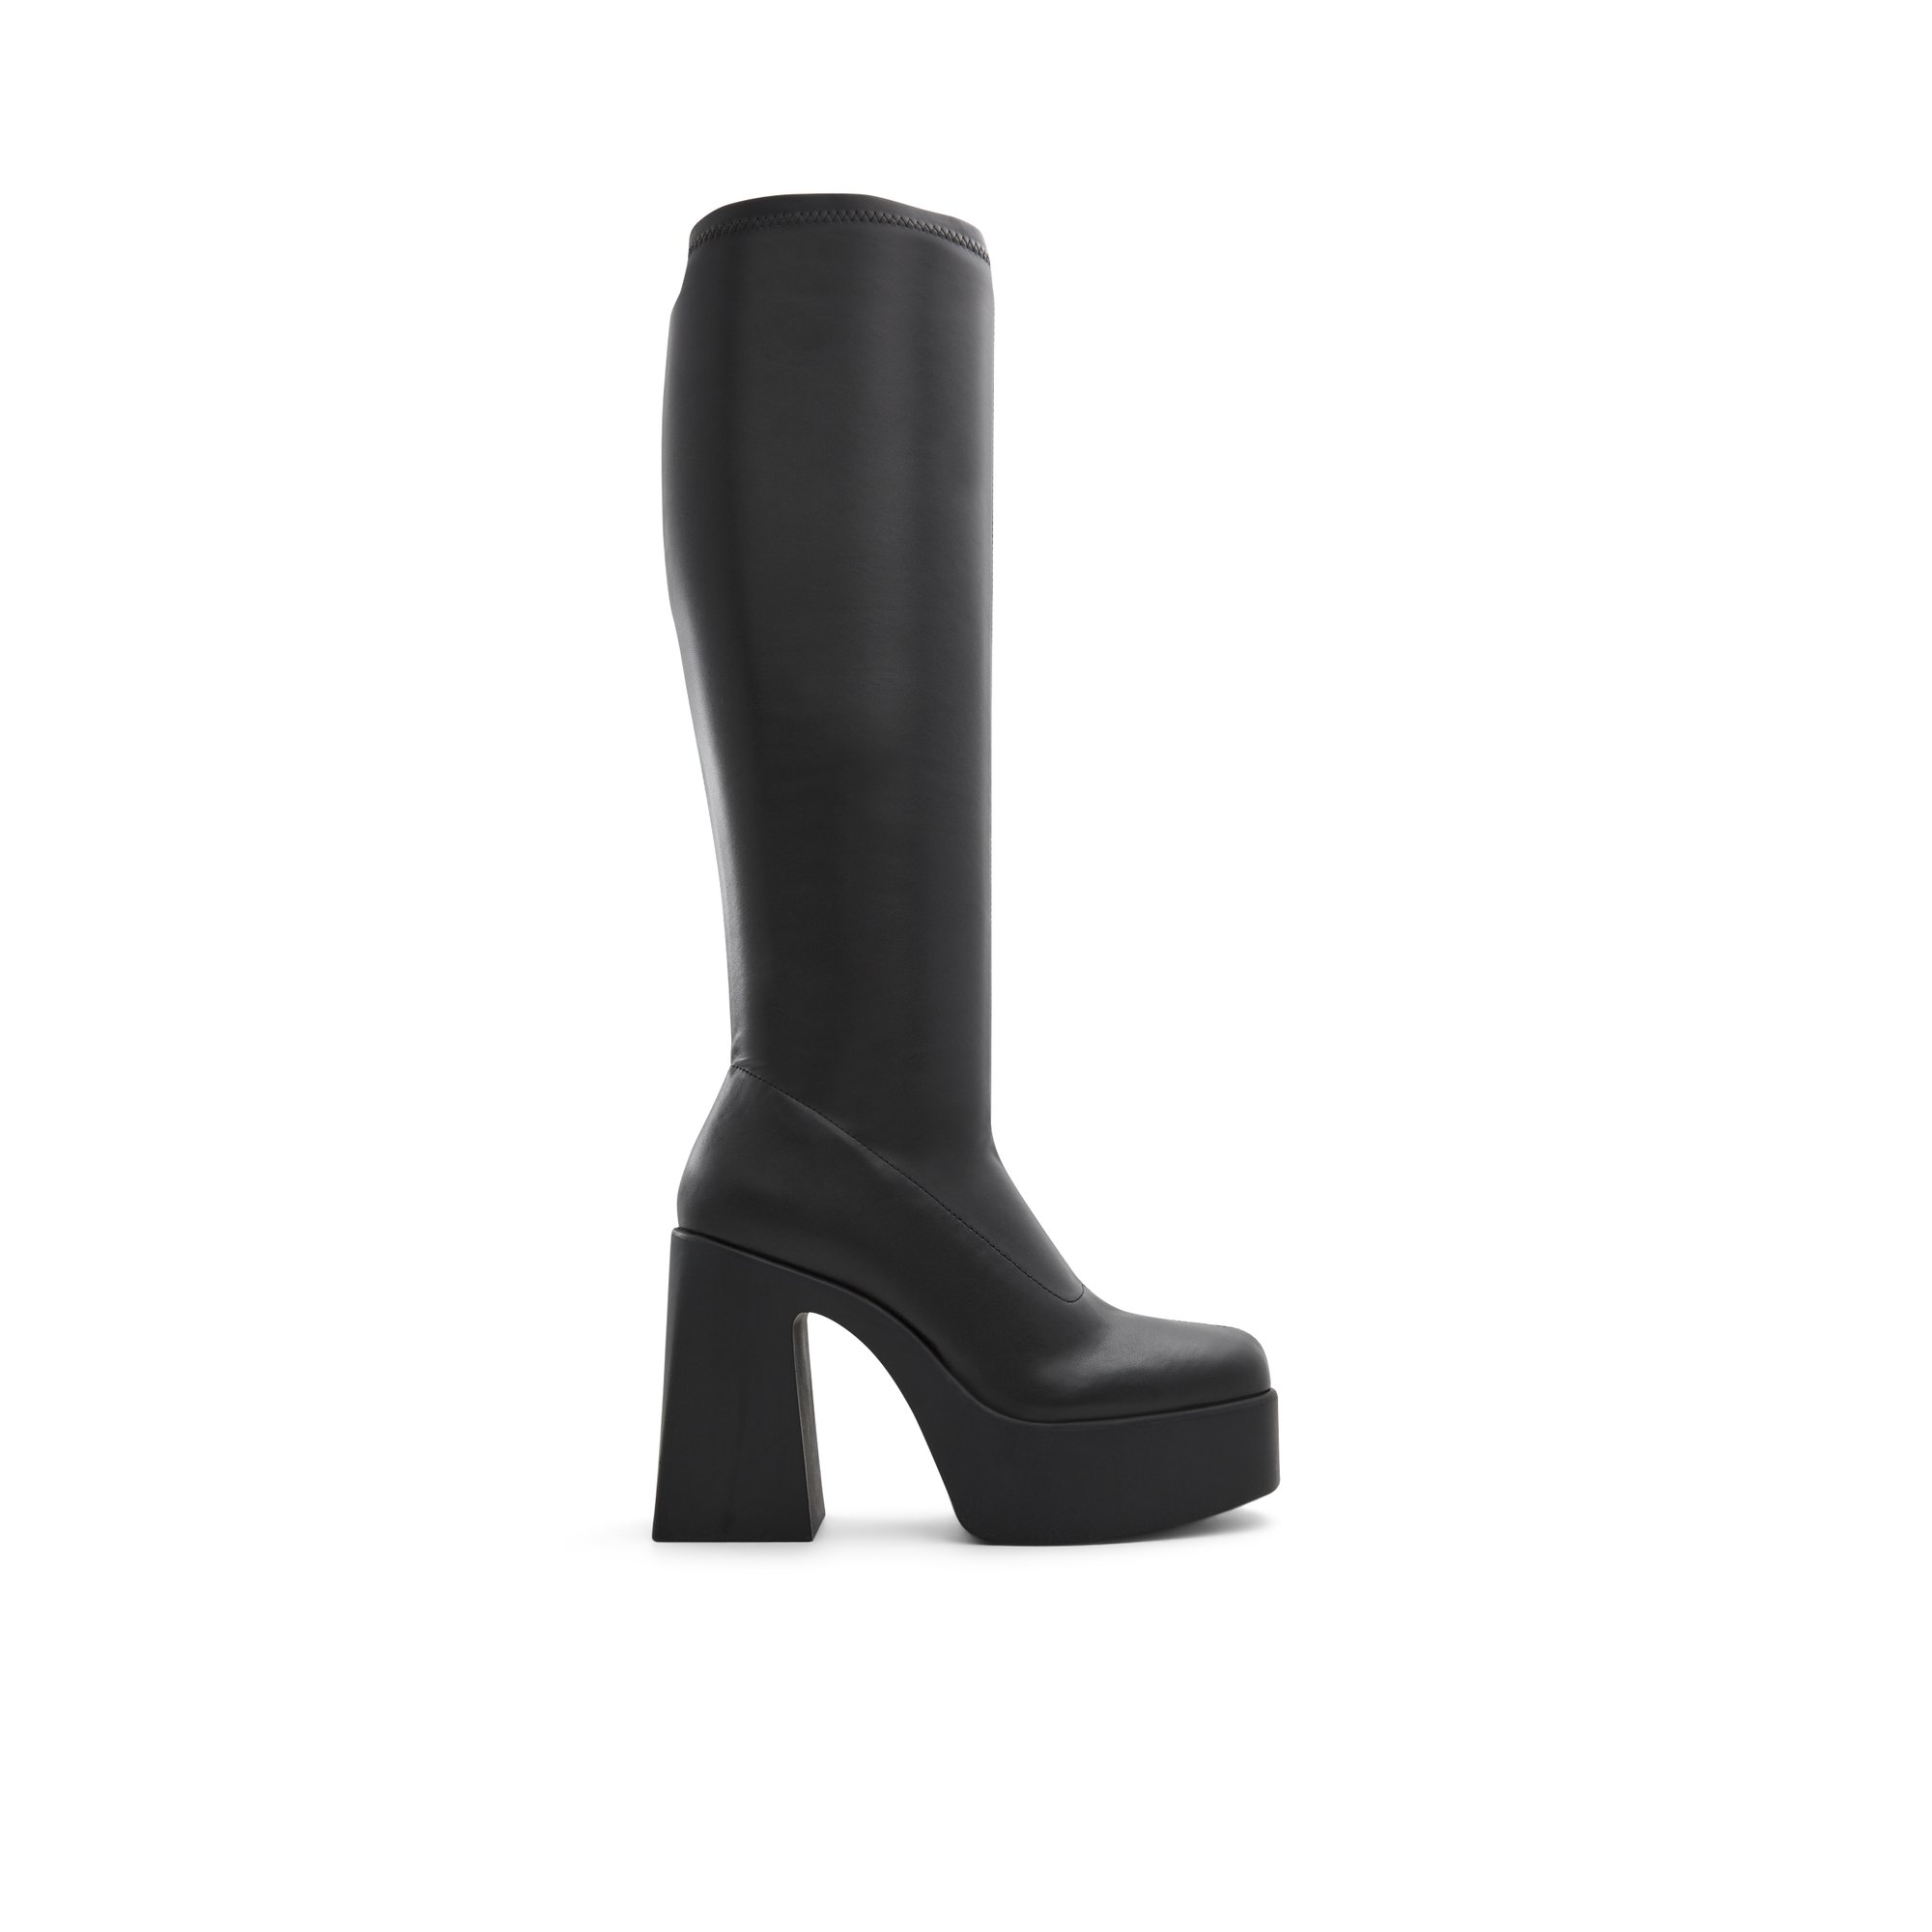 ALDO Moulin - Women's Boots Dress - Black